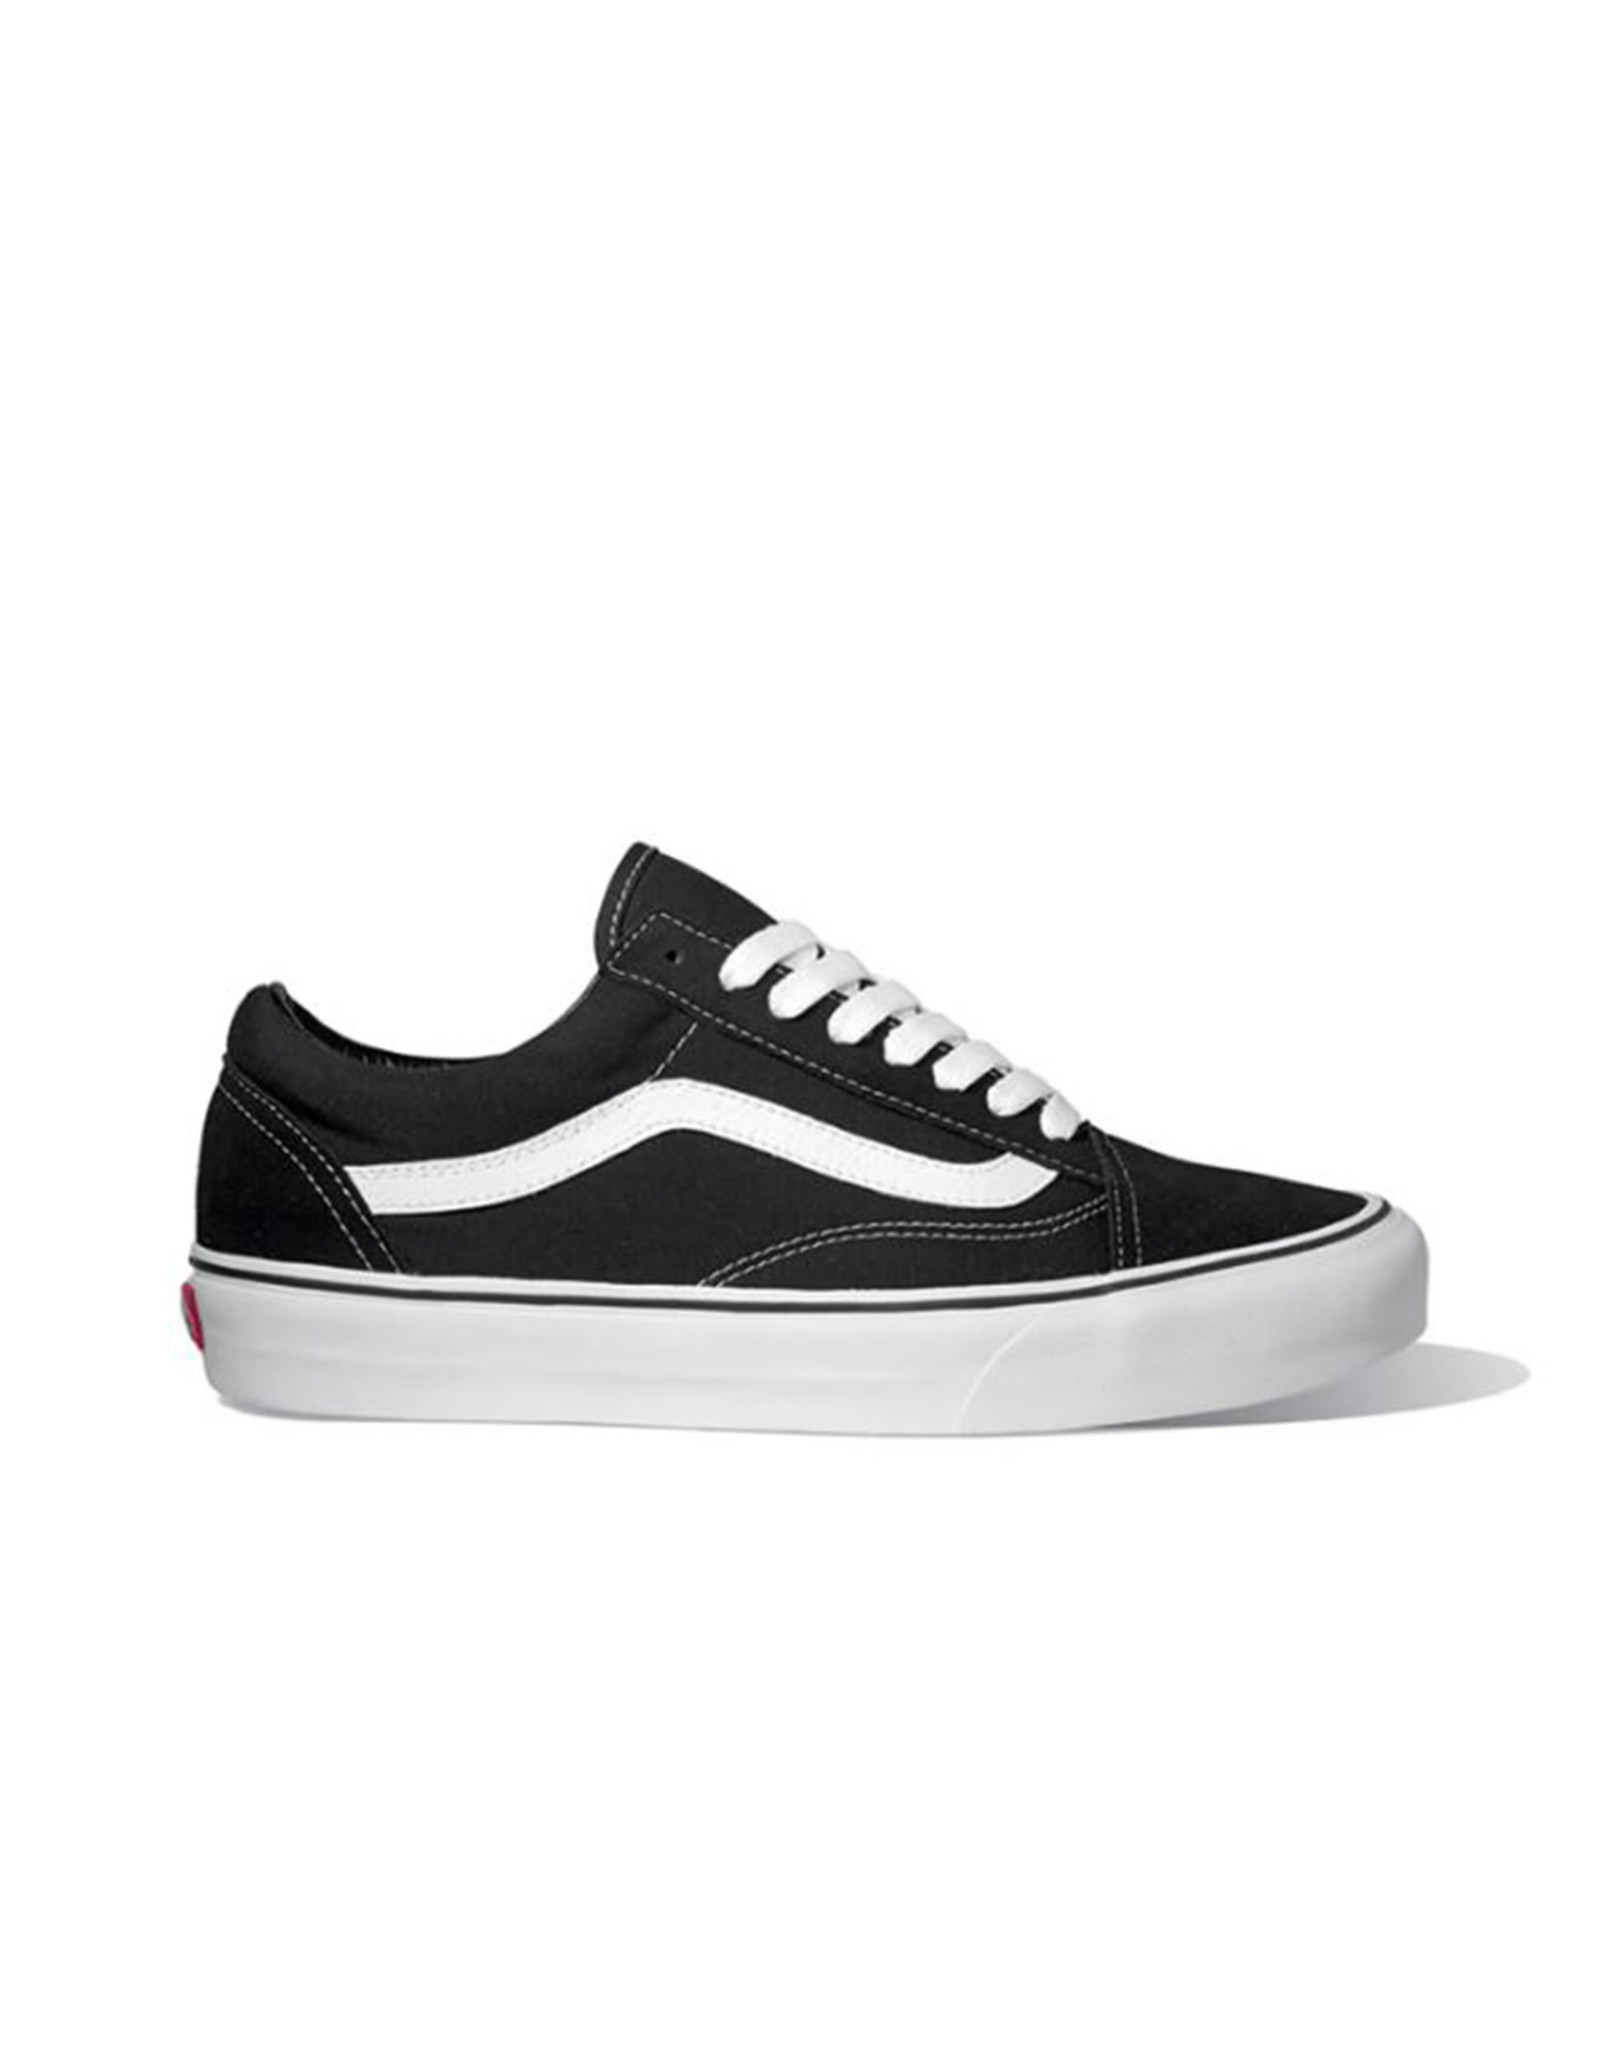 Vans Old Skool Sneakers in Black/White, VN000D3HY28 - Men 9/Wmn 10.5 /  Black